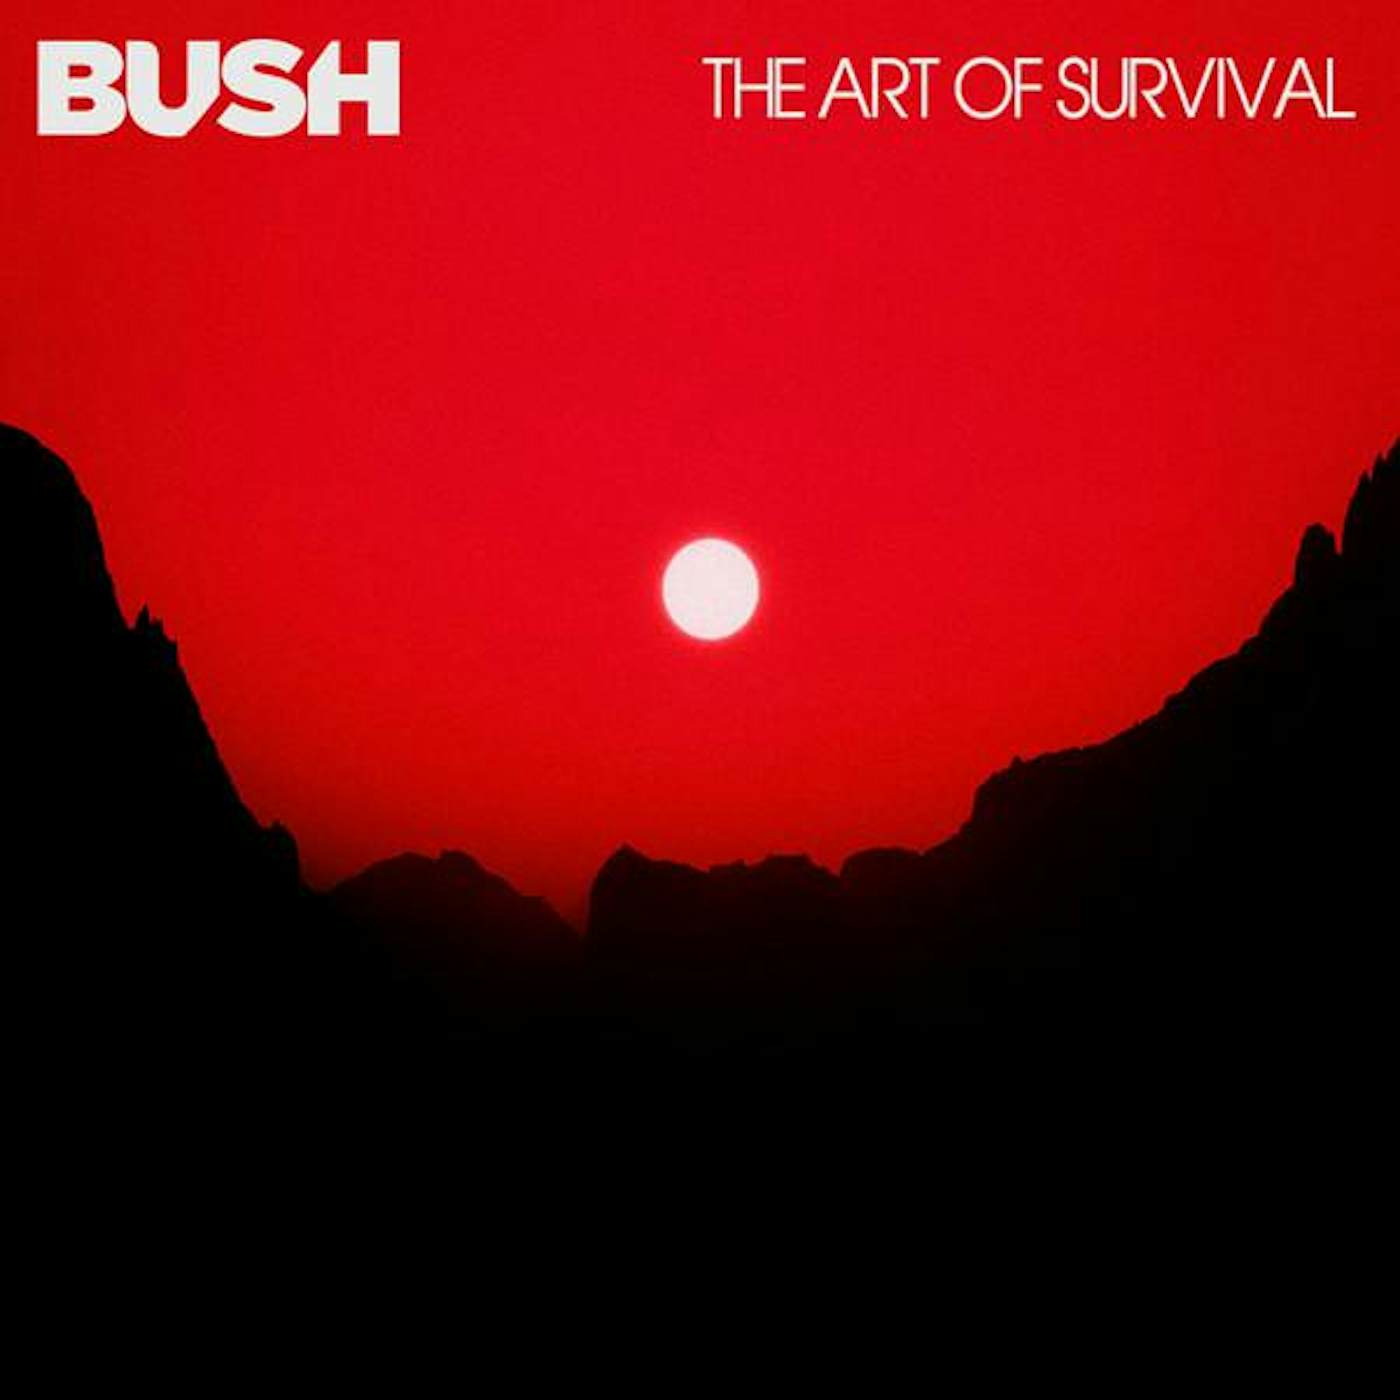 Bush ART OF SURVIVAL CD